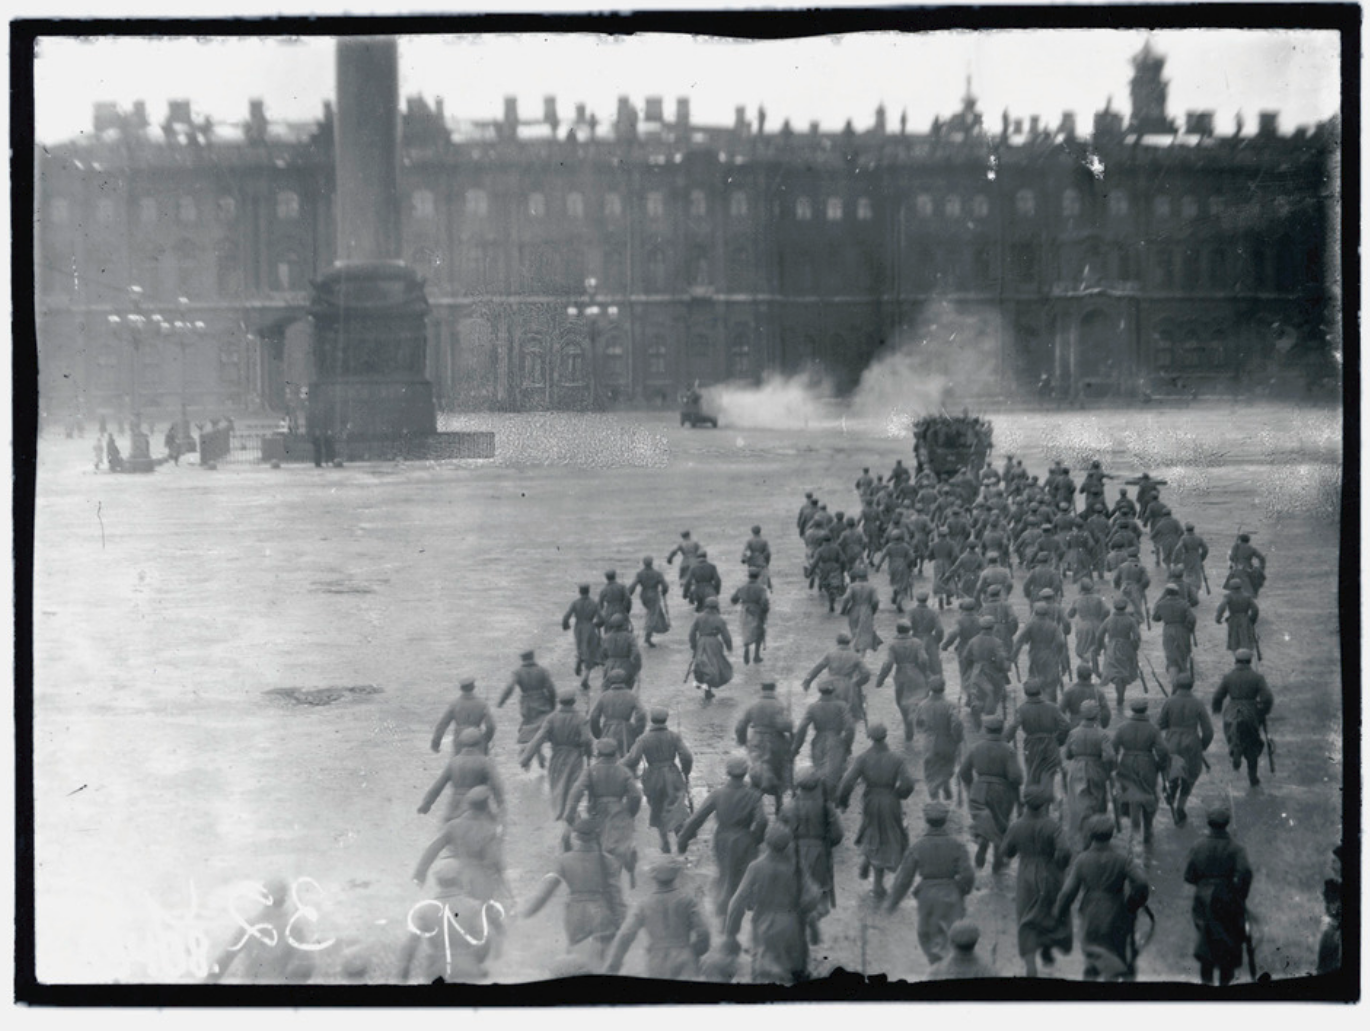 Взятие зимнего дворца в 1917